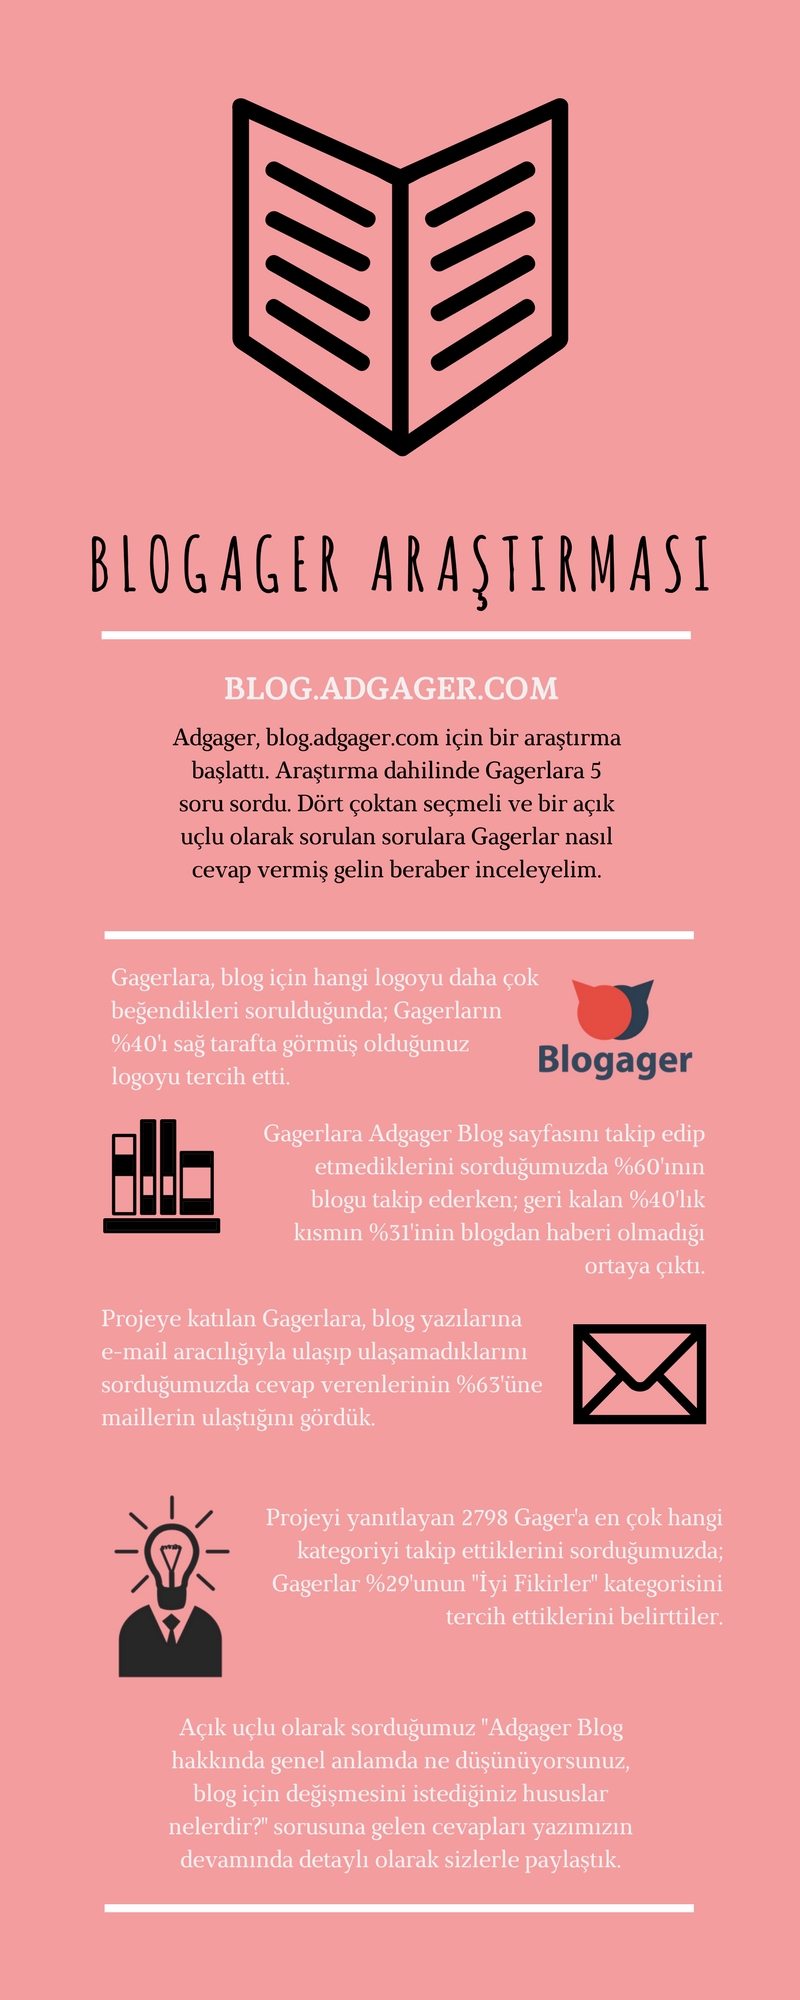 Adgager Blog araştırması sonuçları